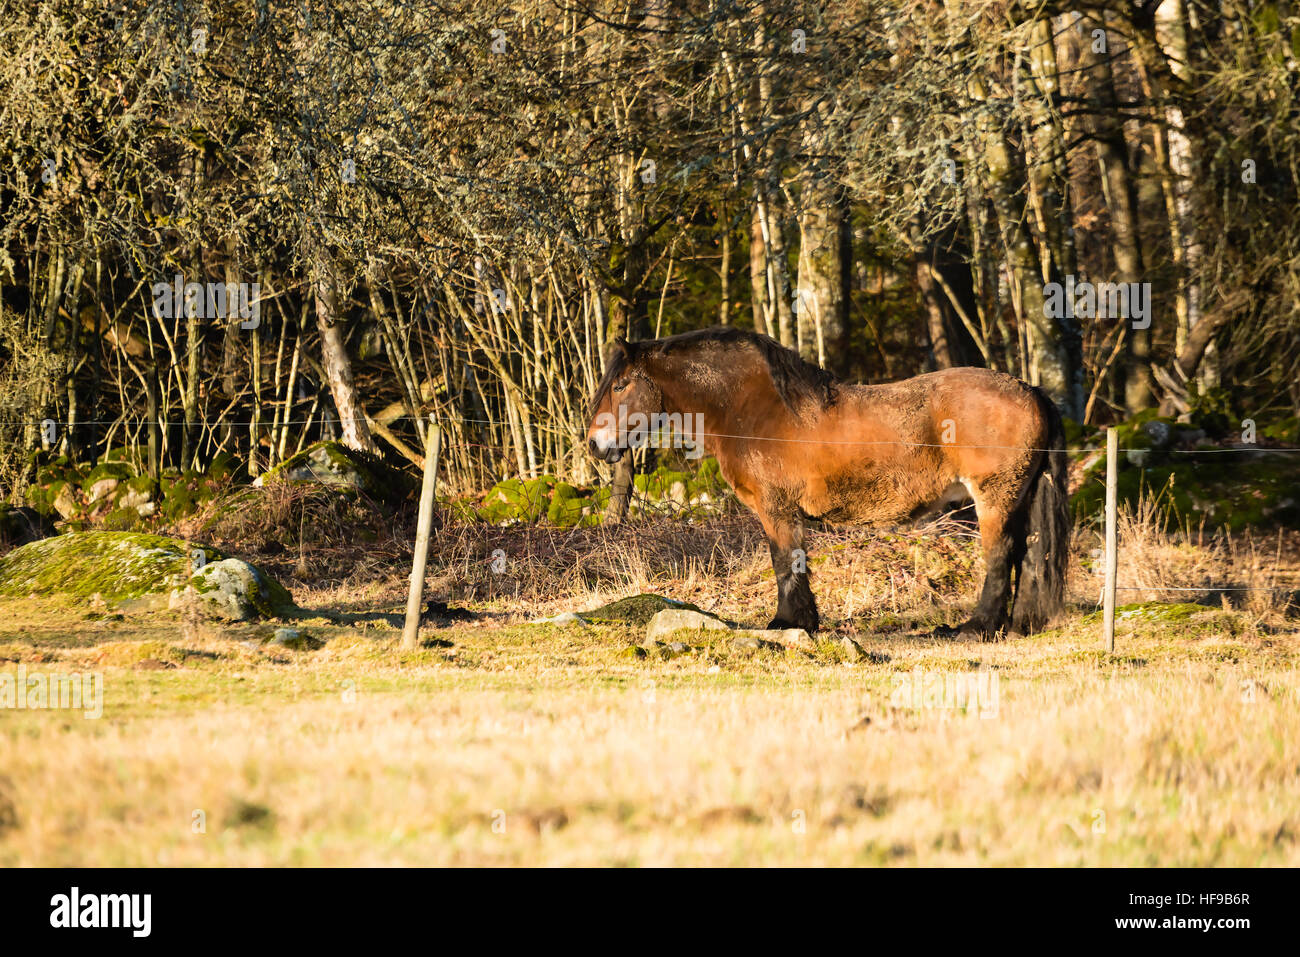 Eine braune Entwurf Pferd stehend im Wald Umgebung hinter Elektrozaun. Stockfoto